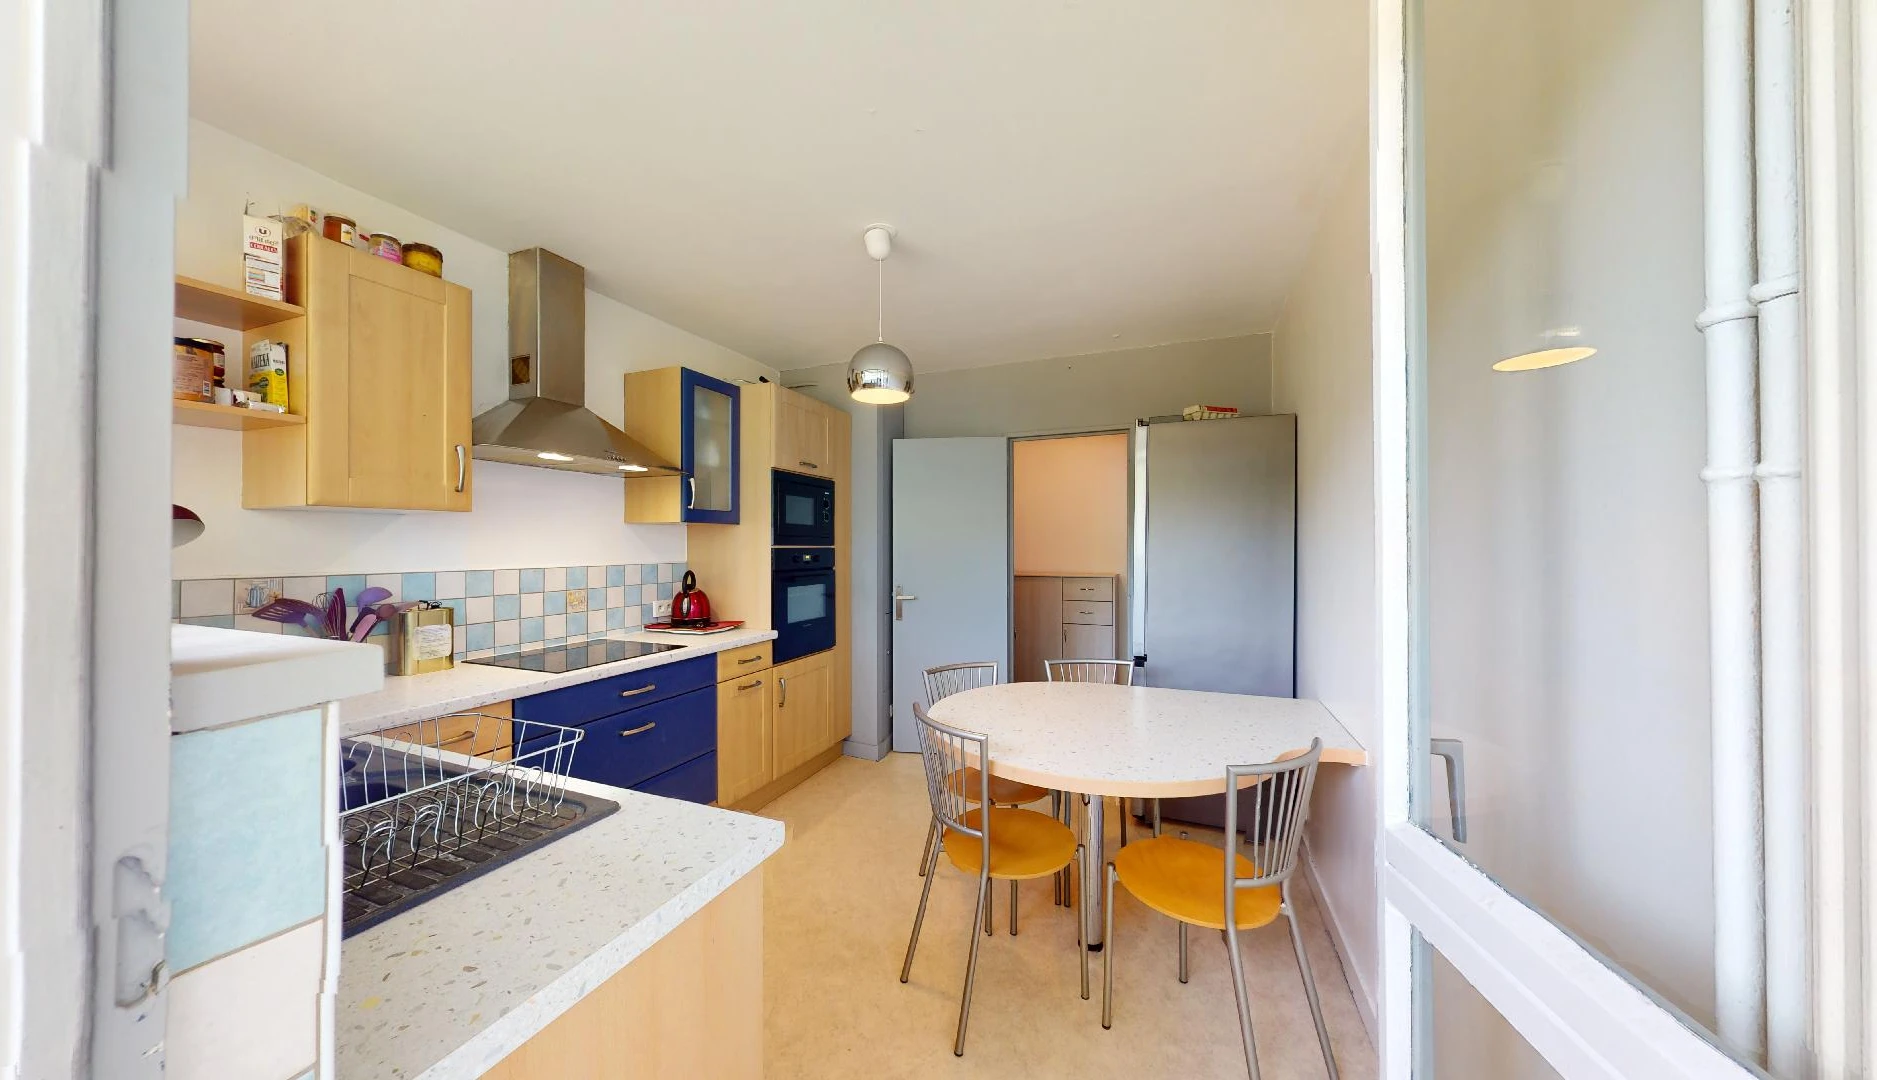 Habitación privada barata en Besançon